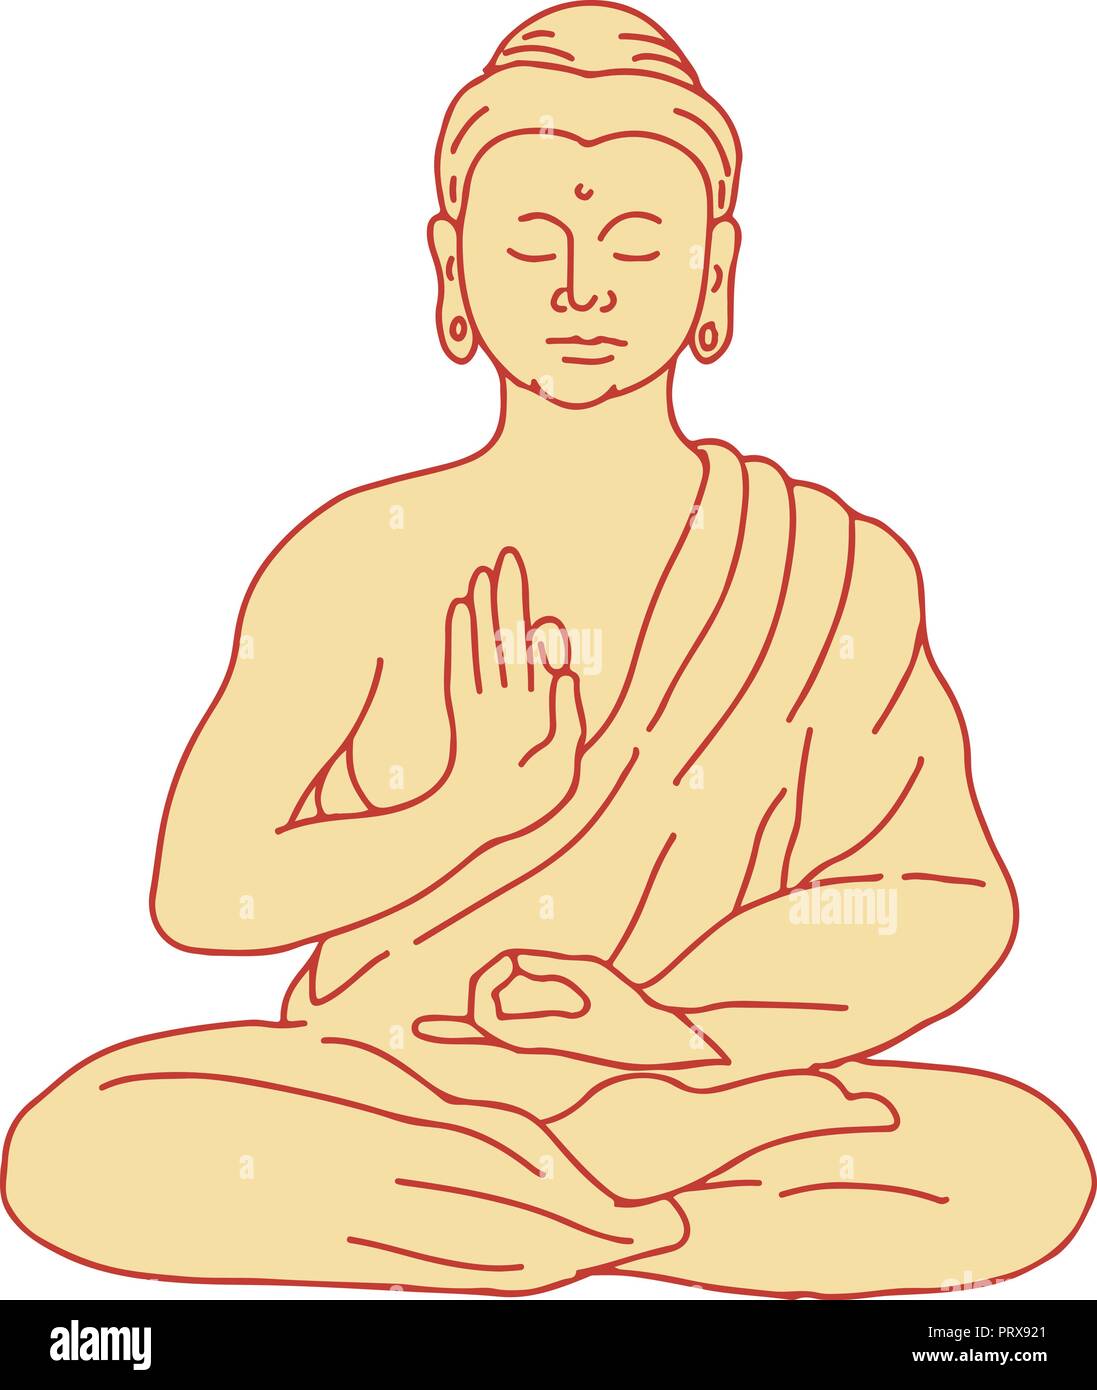 Zeichnung Skizze stil Abbildung des Gautama Buddha Siddhartha Gautama oder Shakyamuni Buddha sitzend in Lotus Position von vorne gesehen auf isolierten b Stock Vektor